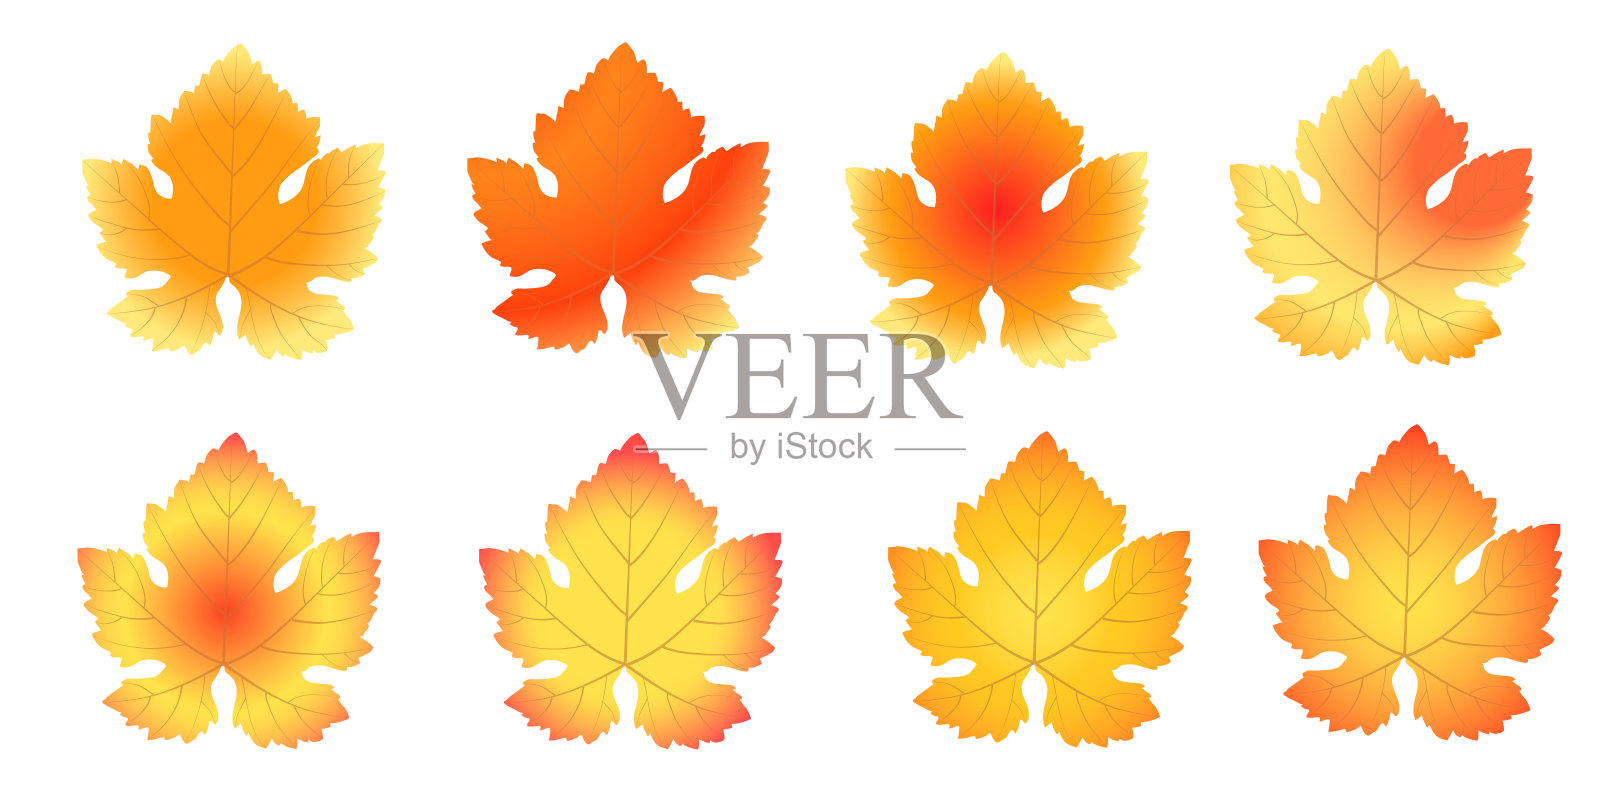 一组秋天的葡萄叶子在白色的背景上设计元素图片